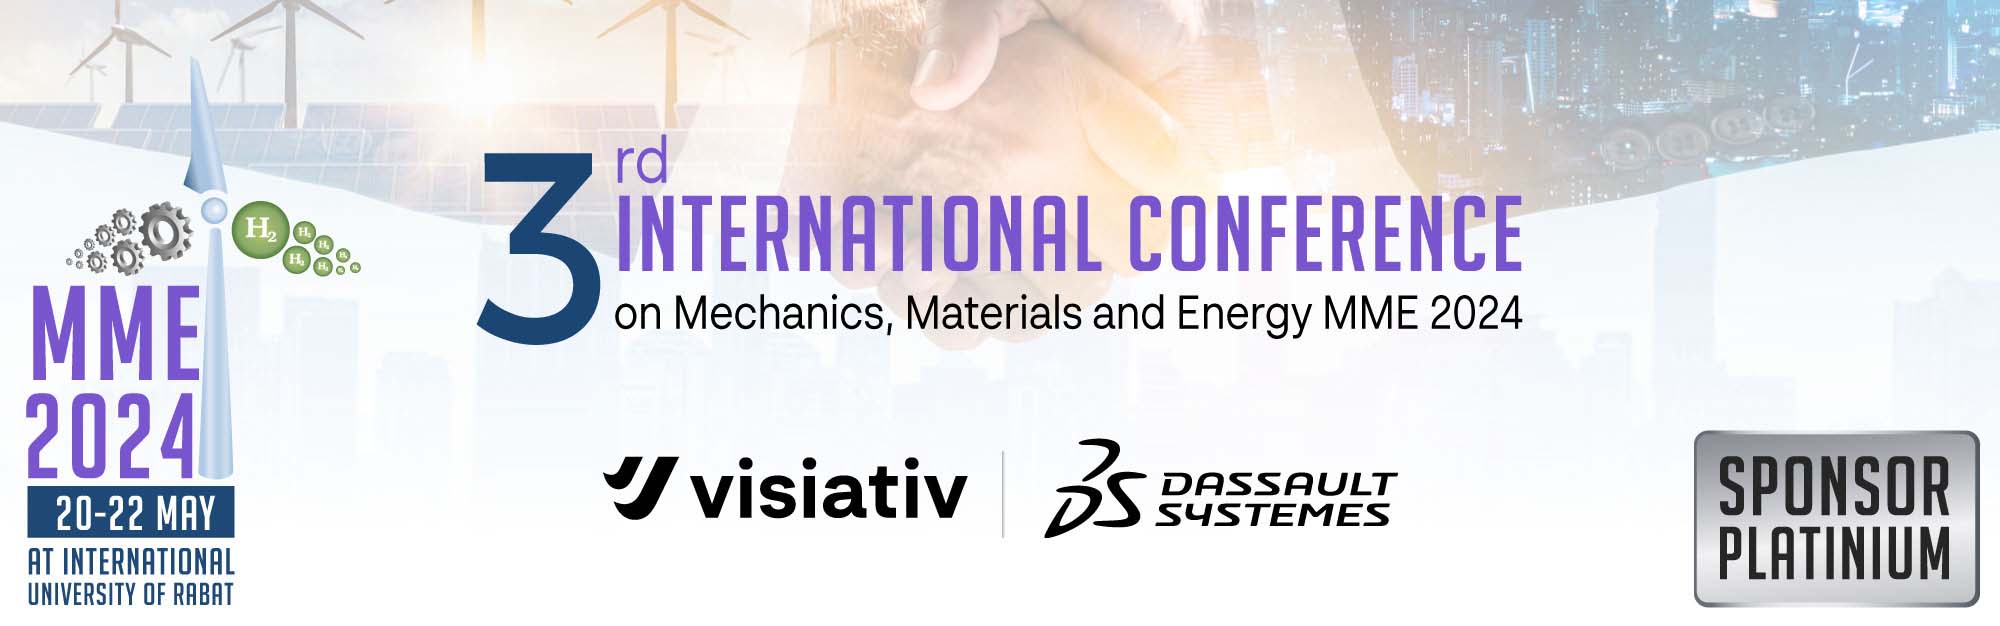 Conférence Internationale MME 2024 : Visiativ & Dassault Systèmes y participent !